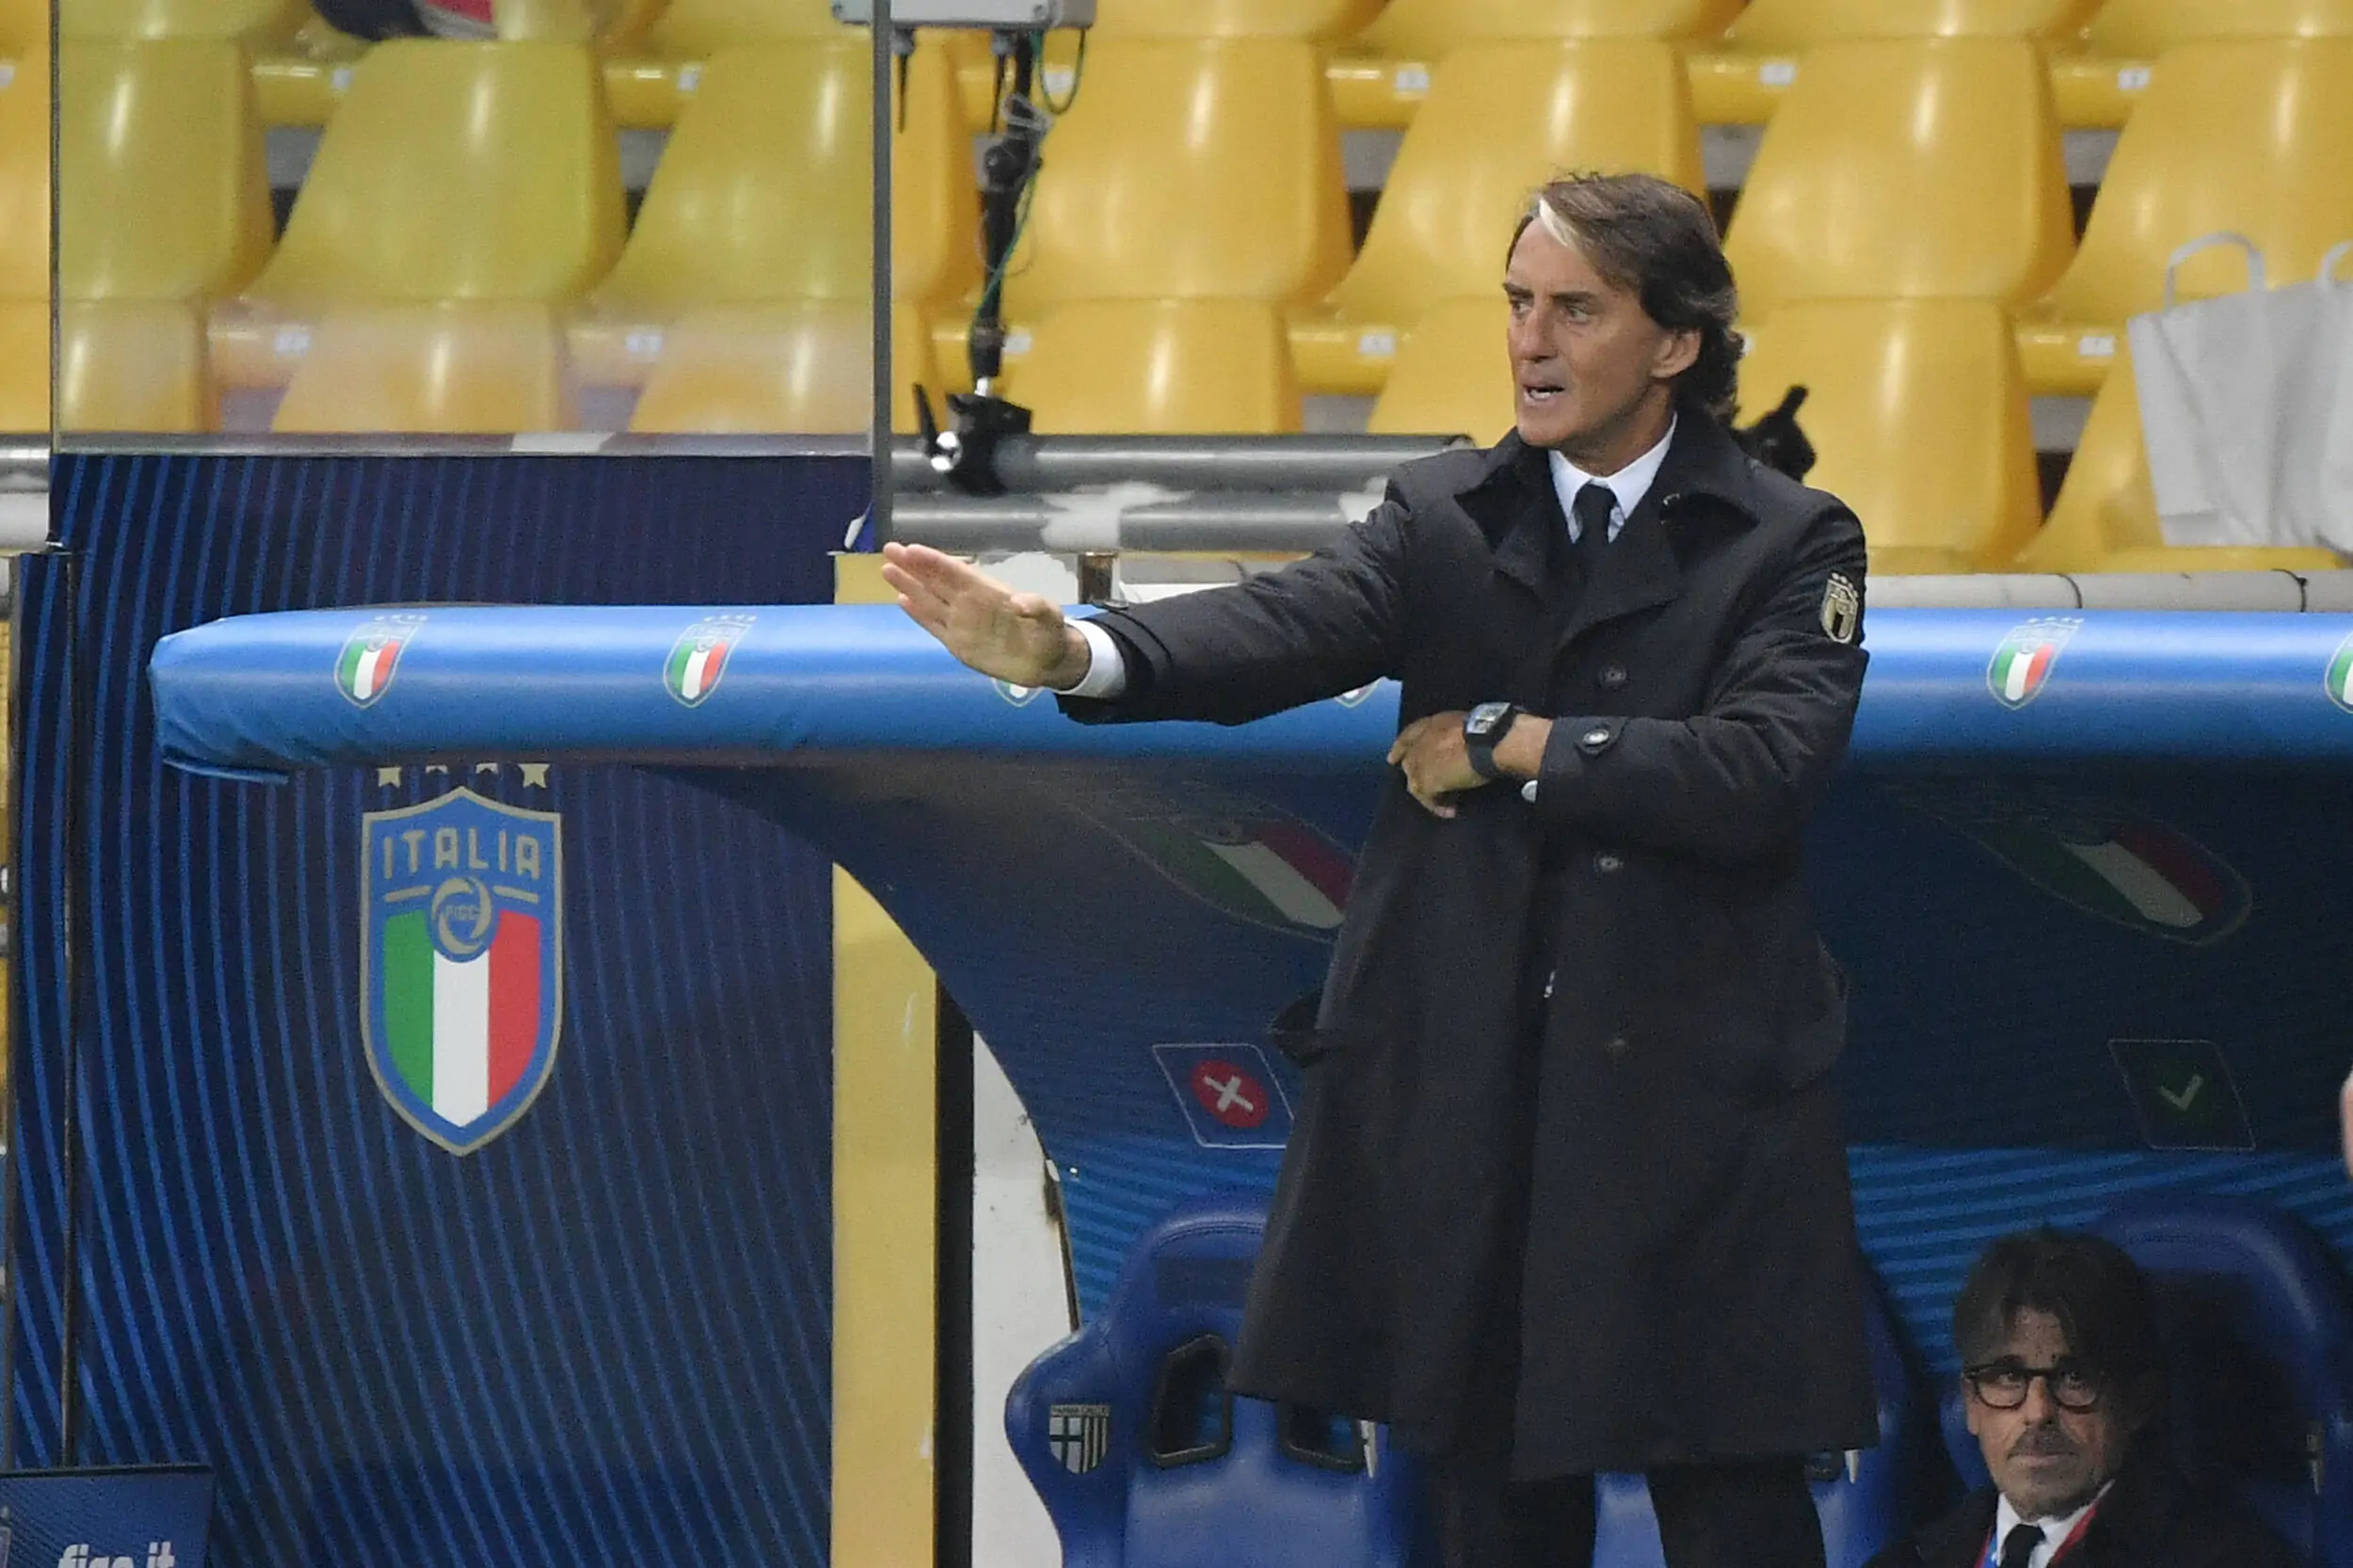 Roberto Mancini sarà CT fino al 2026: firmato il rinnovo di contratto con la Nazionale